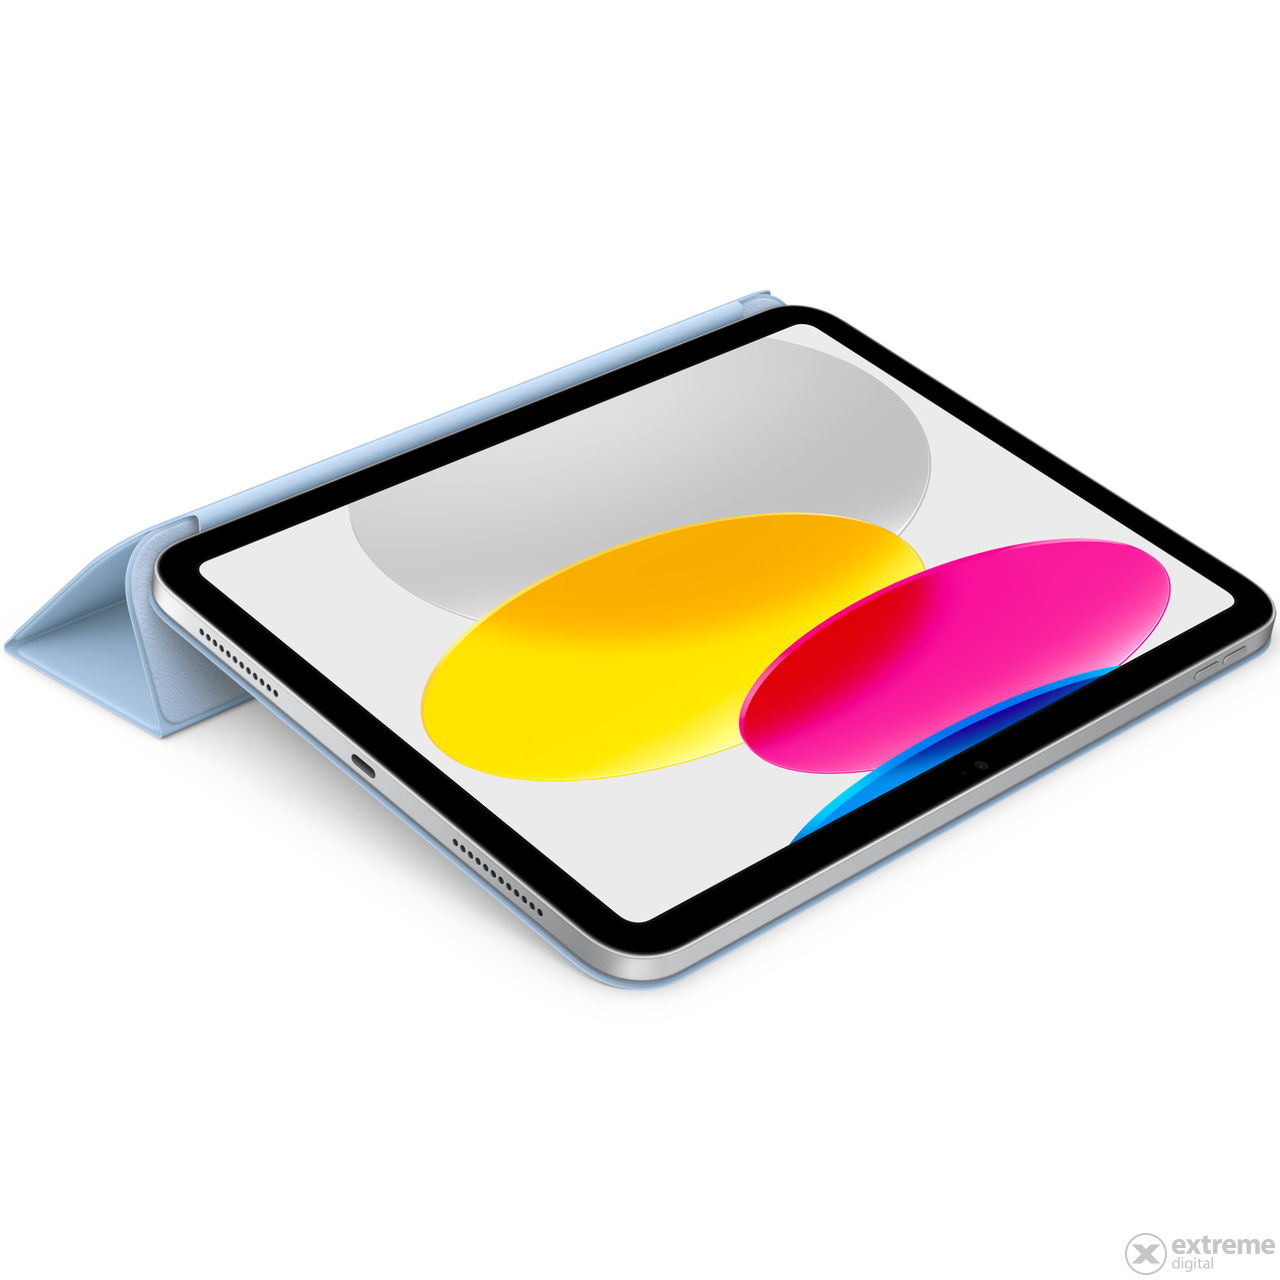 Apple Smart Folio futrola za iPad desete generacije, nebesko plava